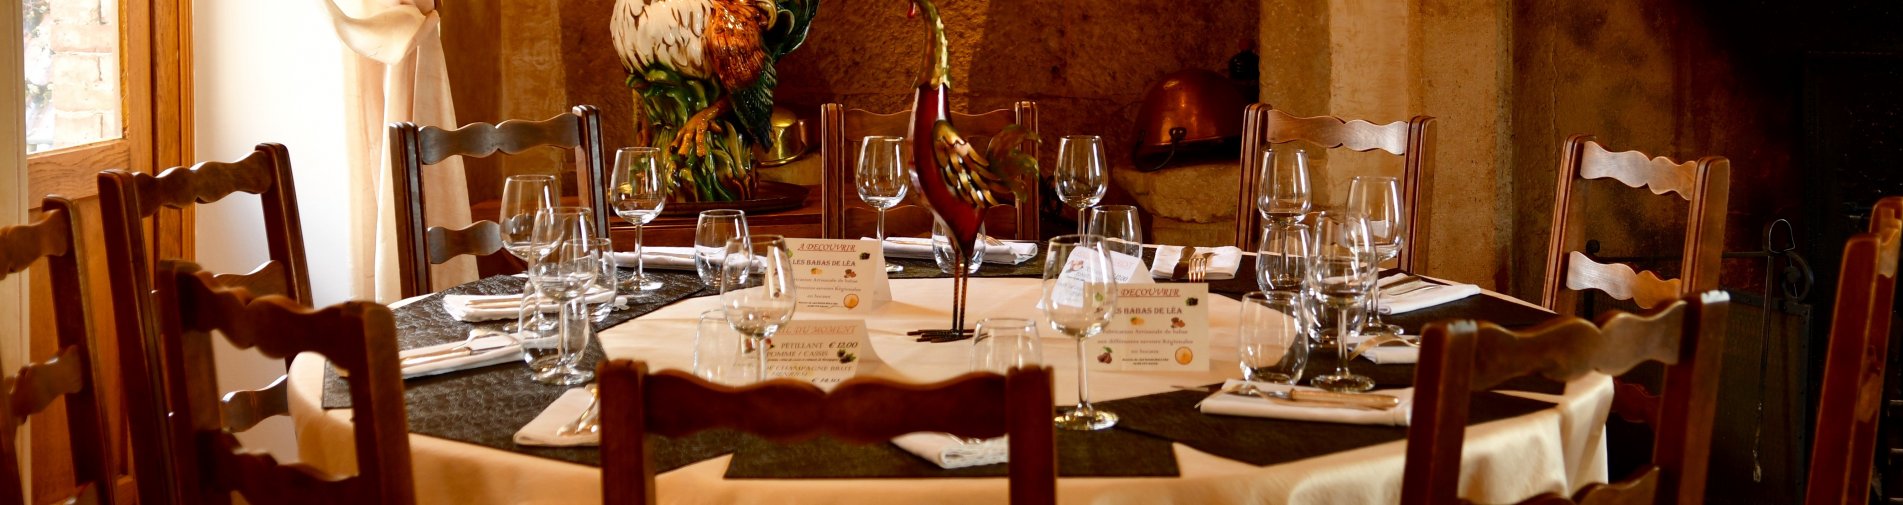 Table de l'auberge du Cheval Blanc